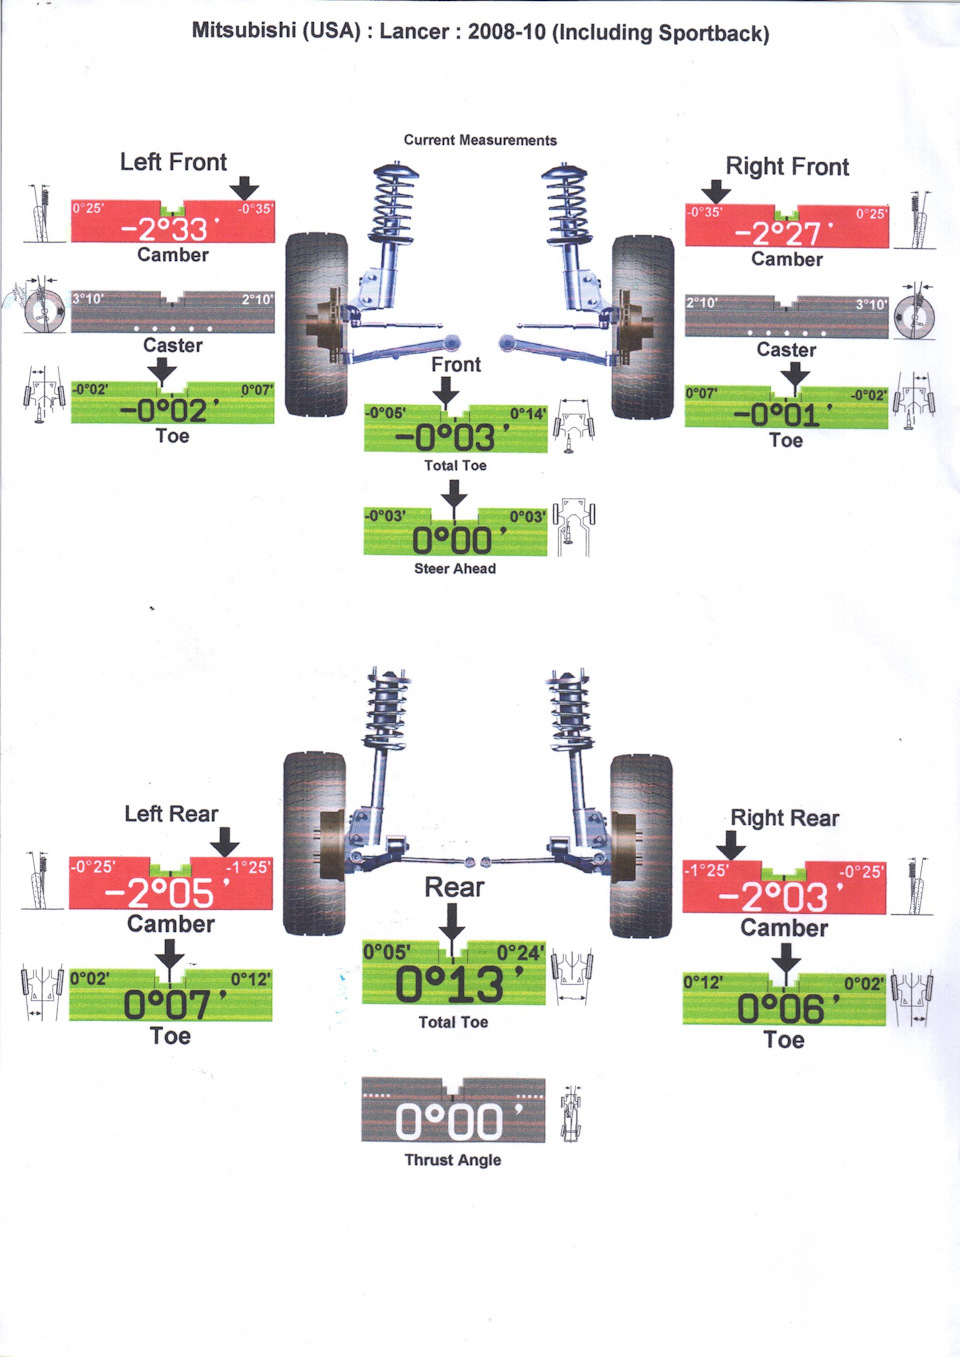 Проверка и регулировка развал схождения (углов установки колес) на автомобиле Lada Granta